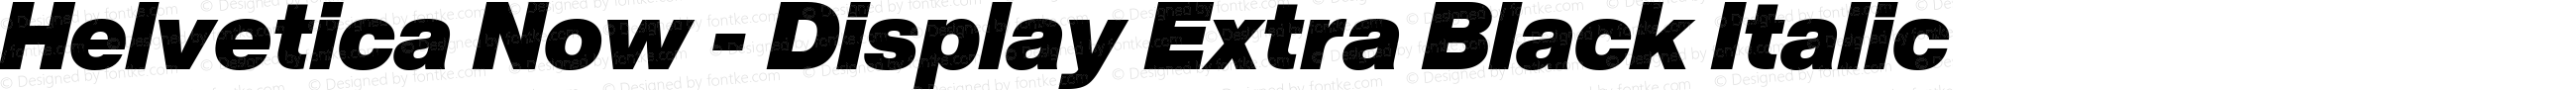 Helvetica Now - Display Extra Black Italic